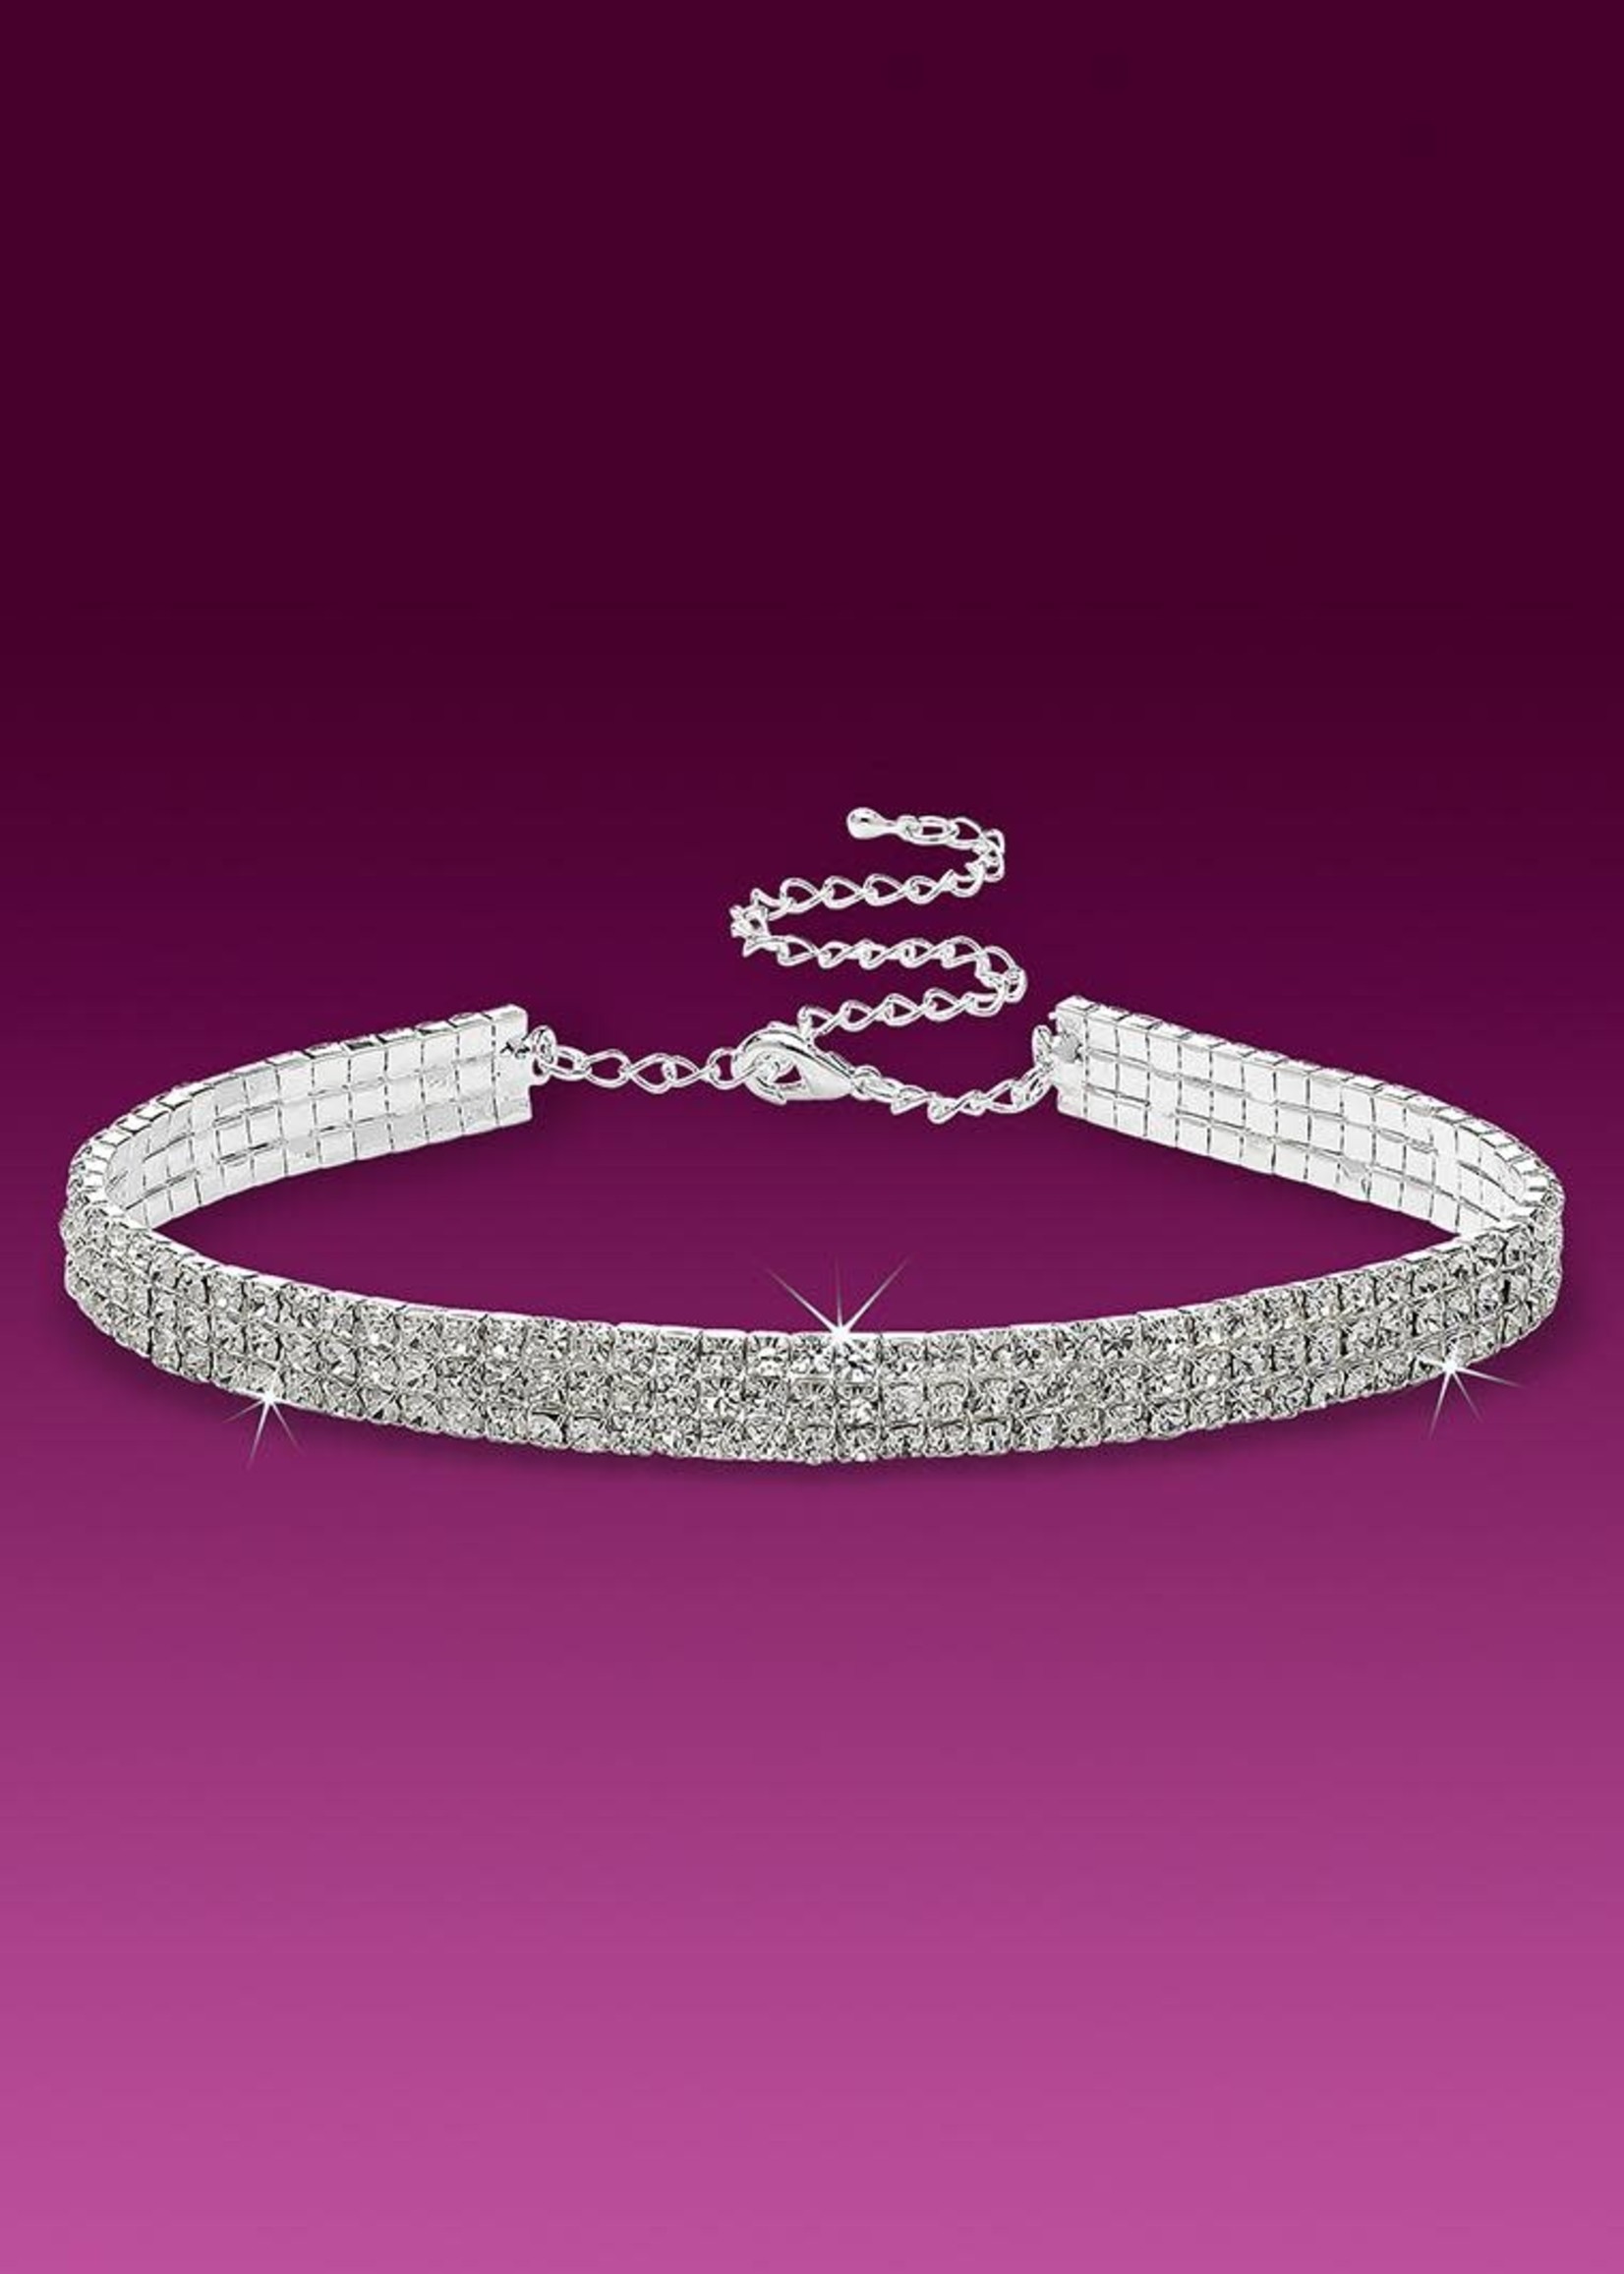 Glamour Goddess Jewelry Inc 3-Row Stretch Rhinestone Choker Necklace